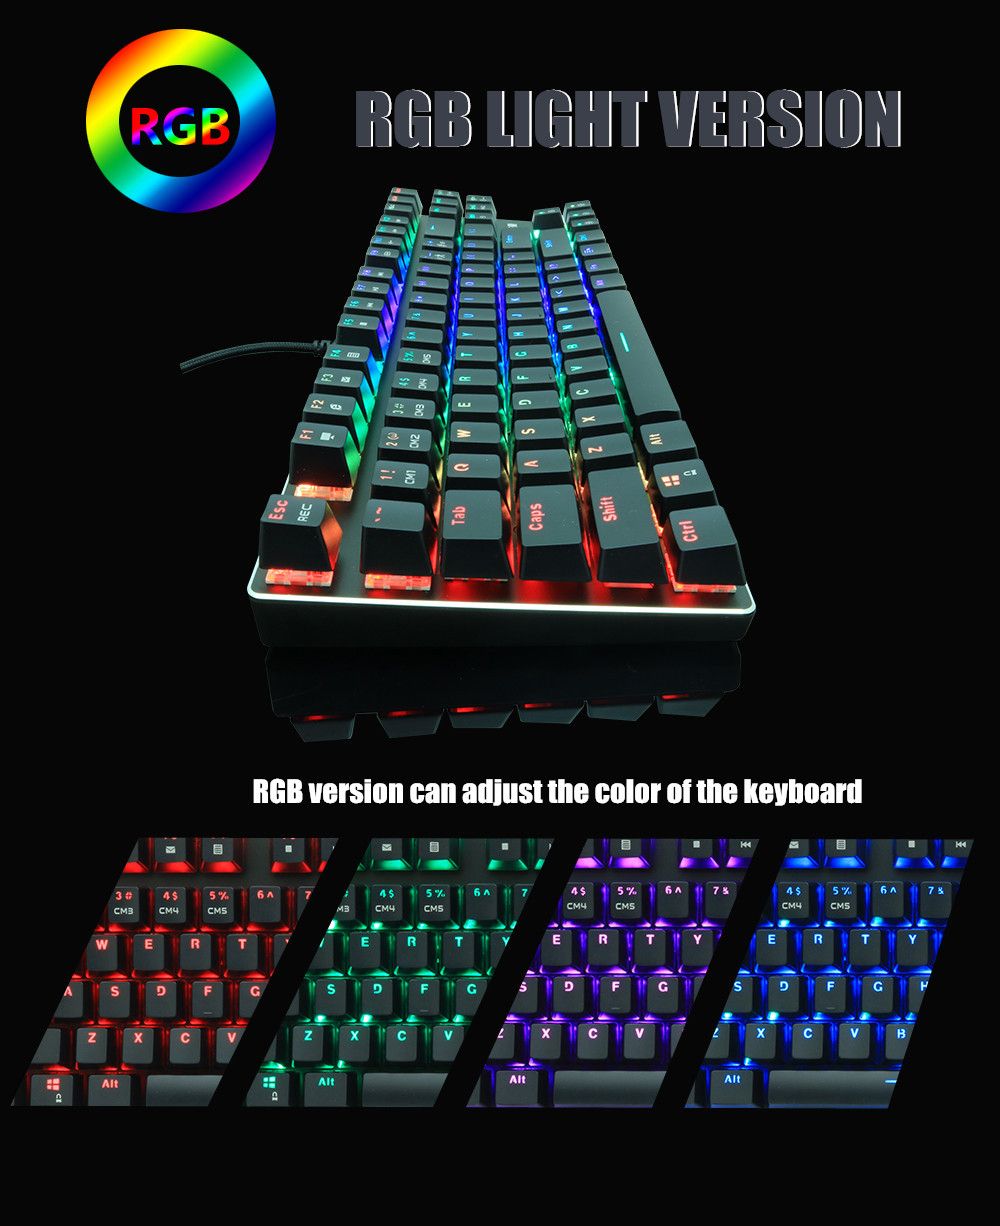 ZUOYA-X51-Wired-87-Keys-Mechanical-Gaming-Keyboard-Desktop-BlueBlack-Switch-RGB-Back-Light-RussianEn-1615013